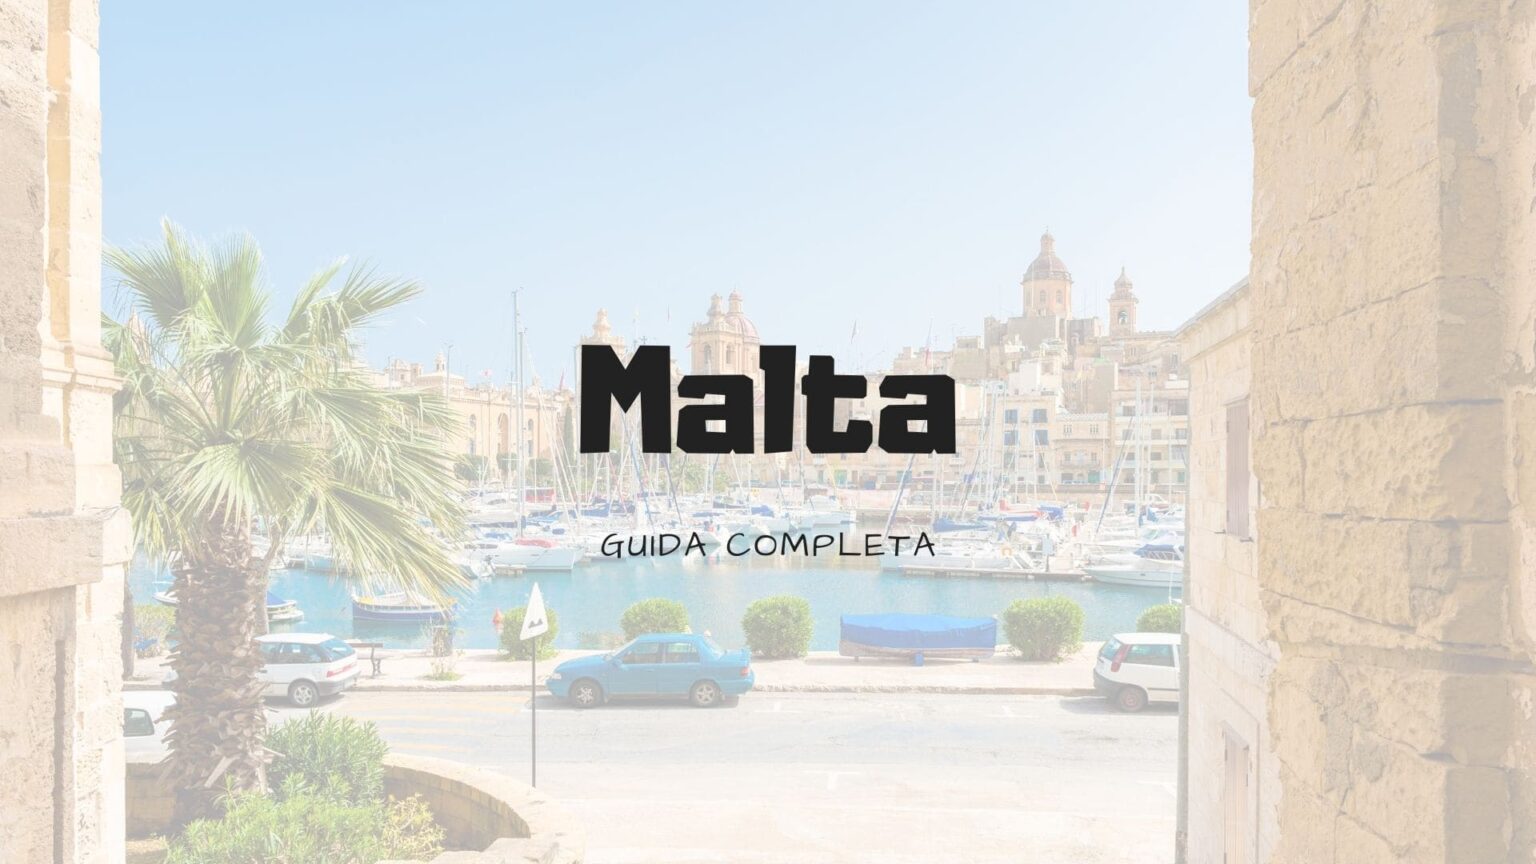 Visitare Malta